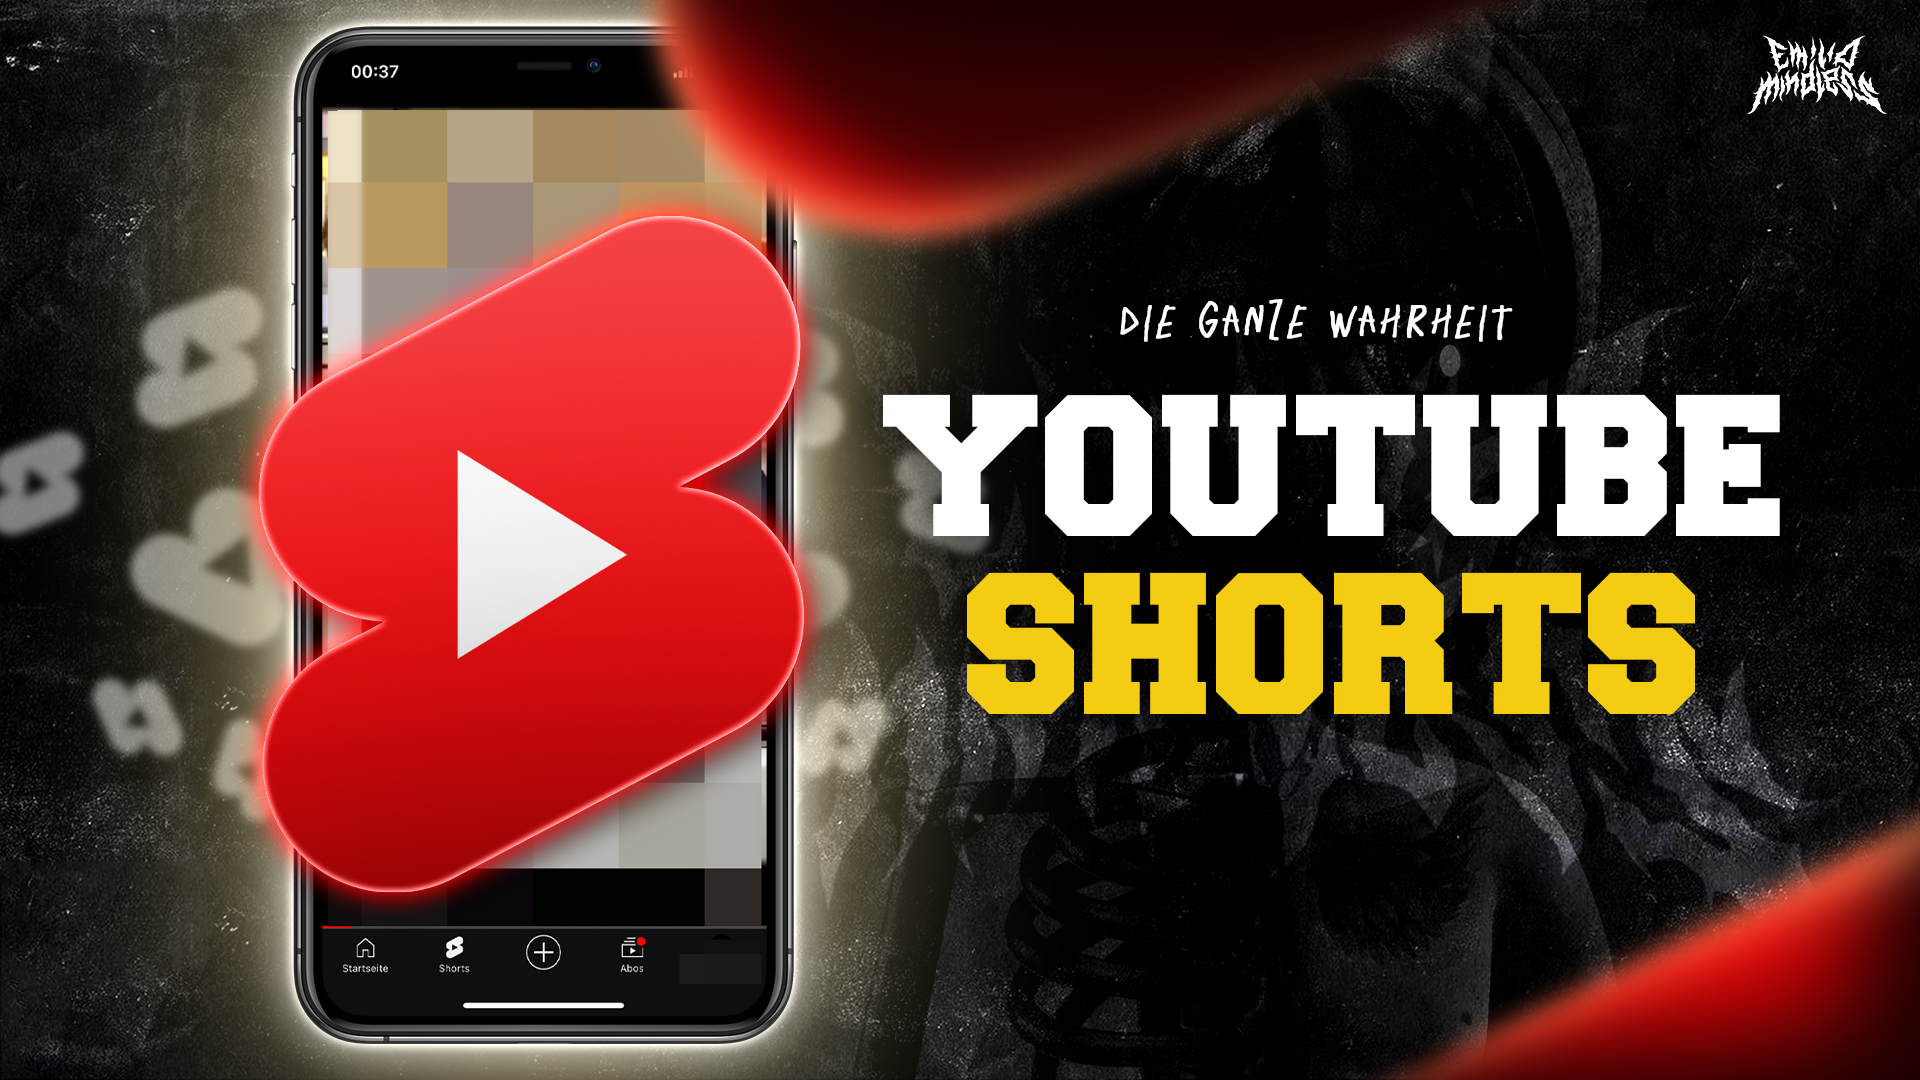 YouTube Shorts für Unternehmer – die ganze Wahrheit